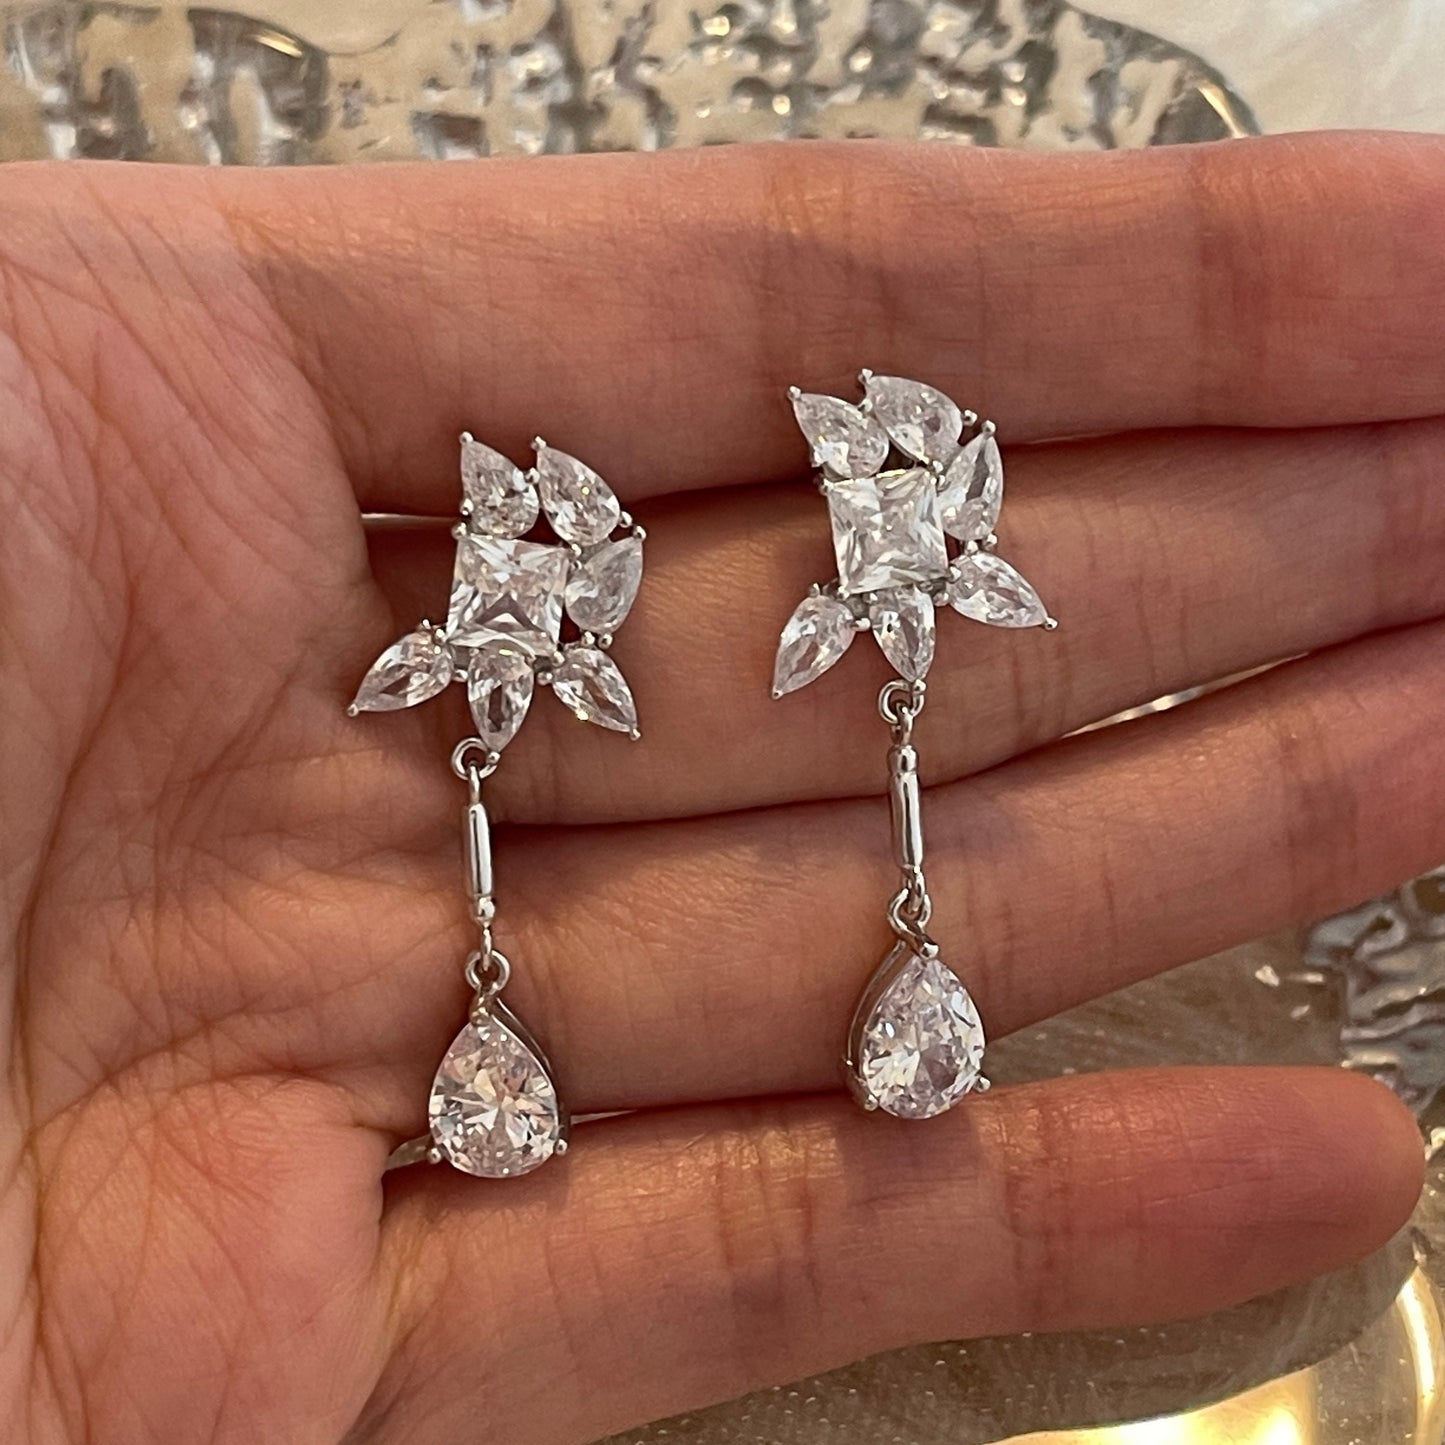 Romantic Bridal Earrings, Ivy Leaf Earrings, Flower Earrings, Diamond CZ Dangle Earrings, Classic Wedding Earrings, Bridal Teardrop Earrings